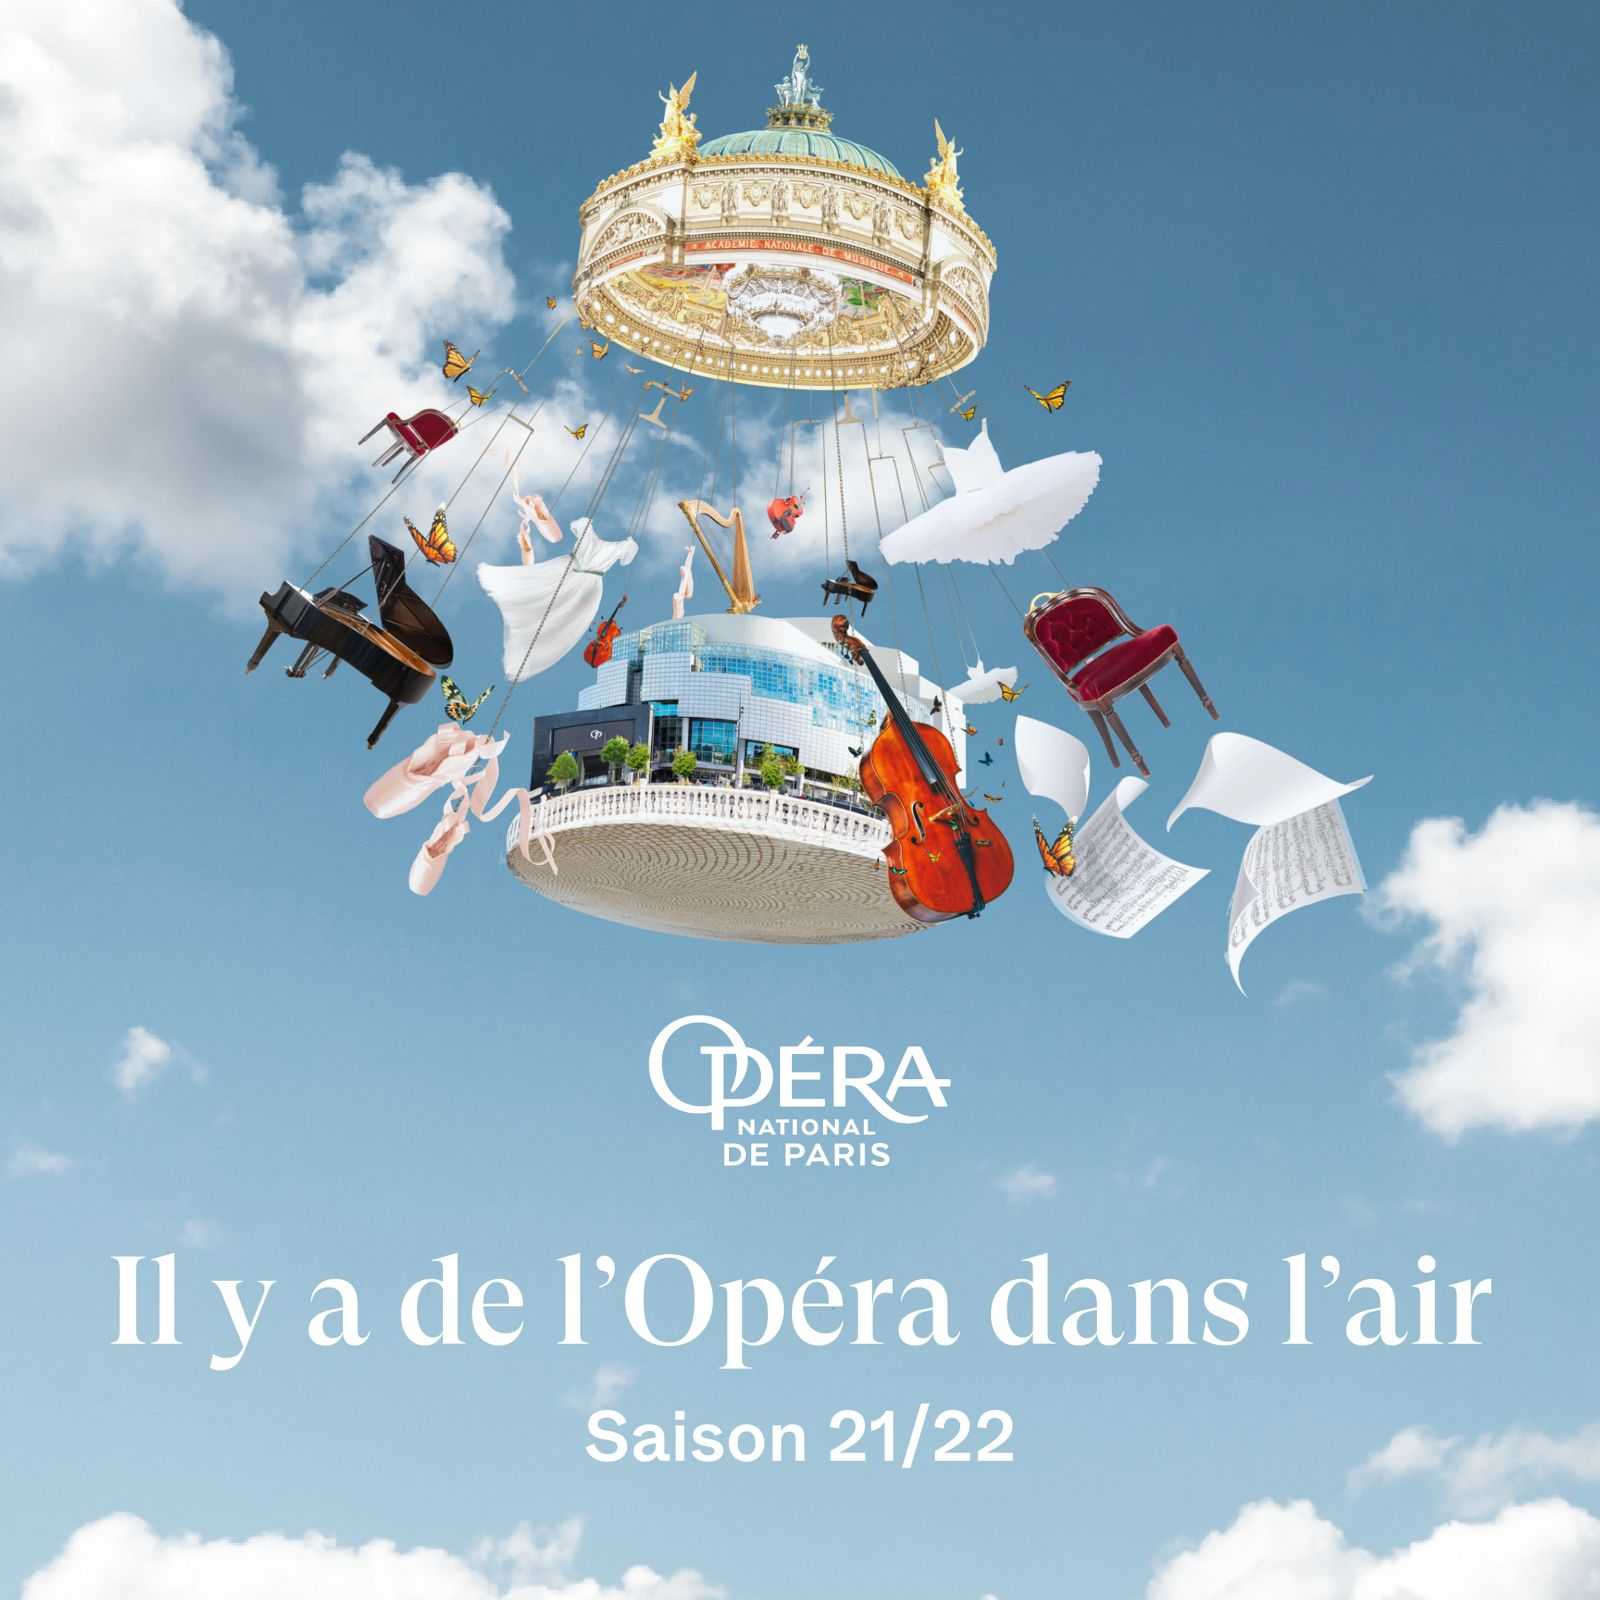 Cendrillon, Opera Bastille, Paris: 23 March-28 April 2022